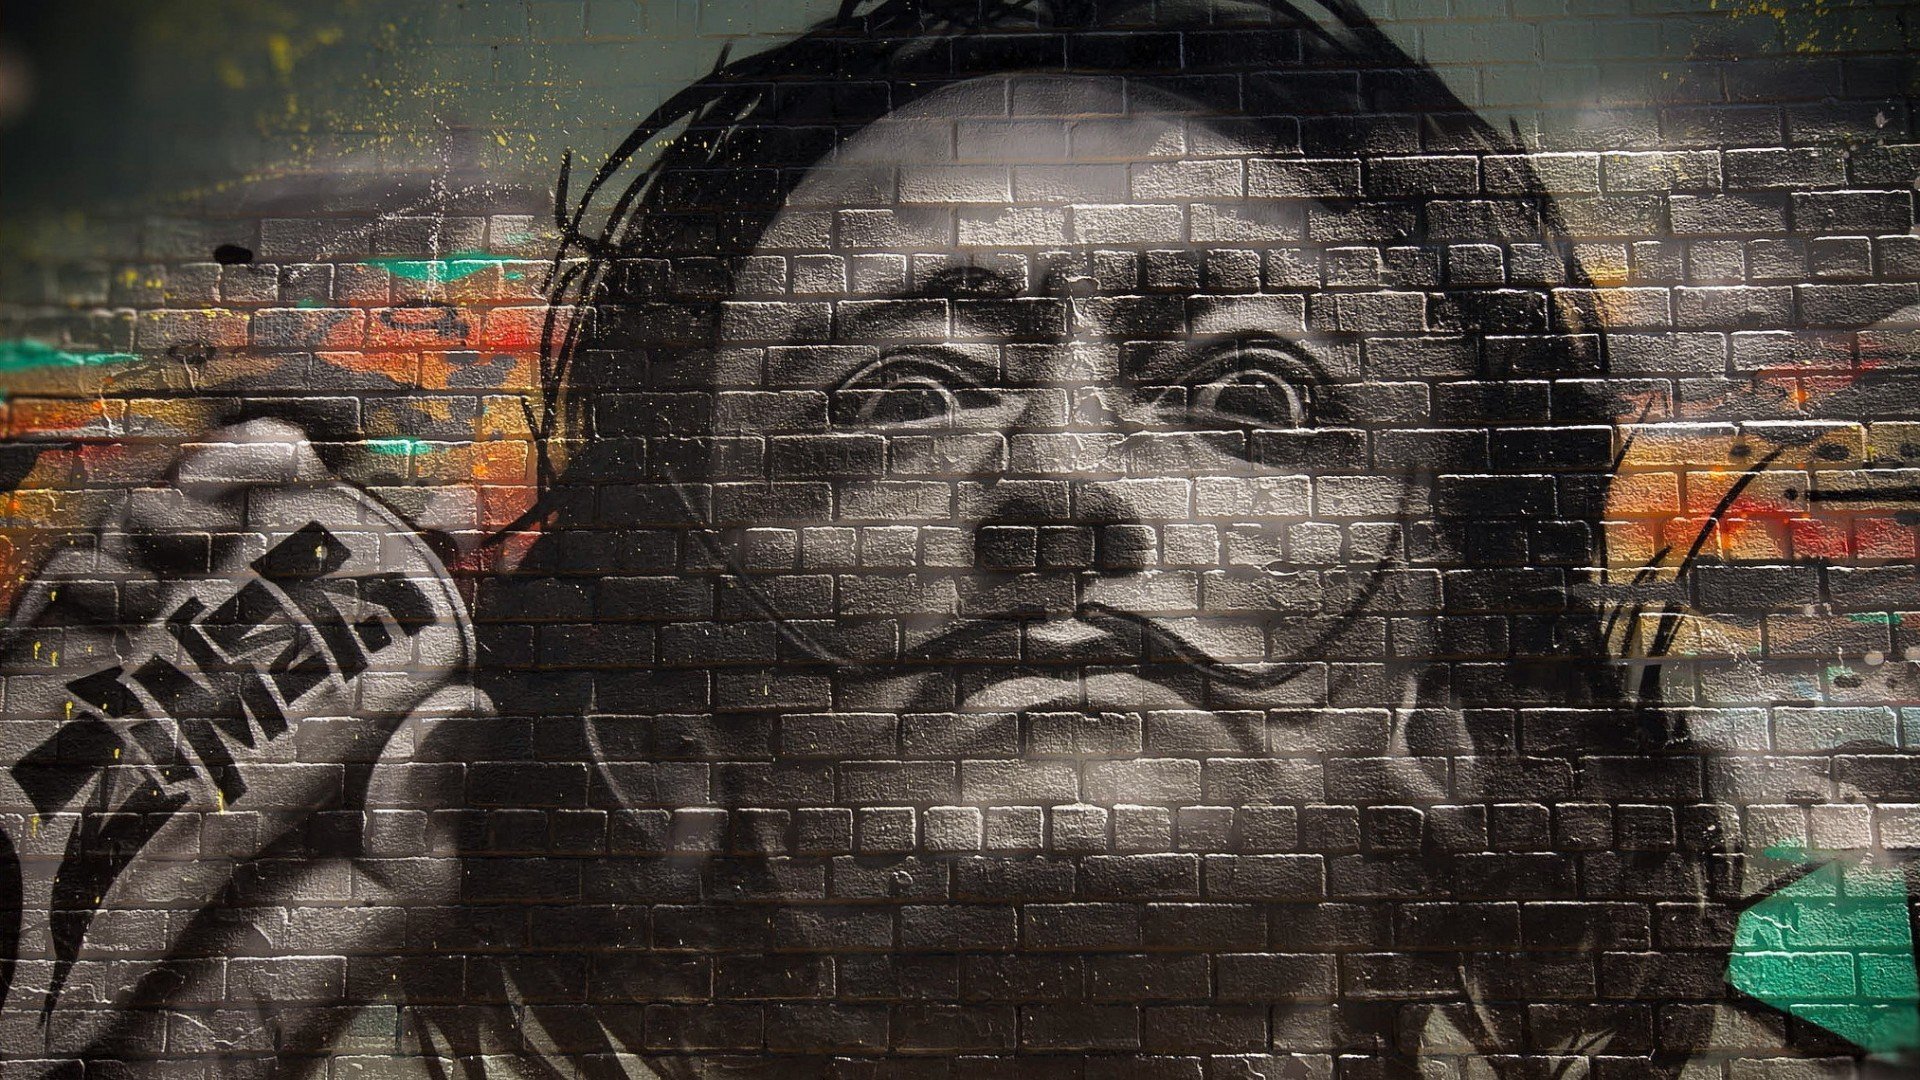 graffiti, Walls, Bricks, Men, Salvador Dalí, Face, Painters, Portrait